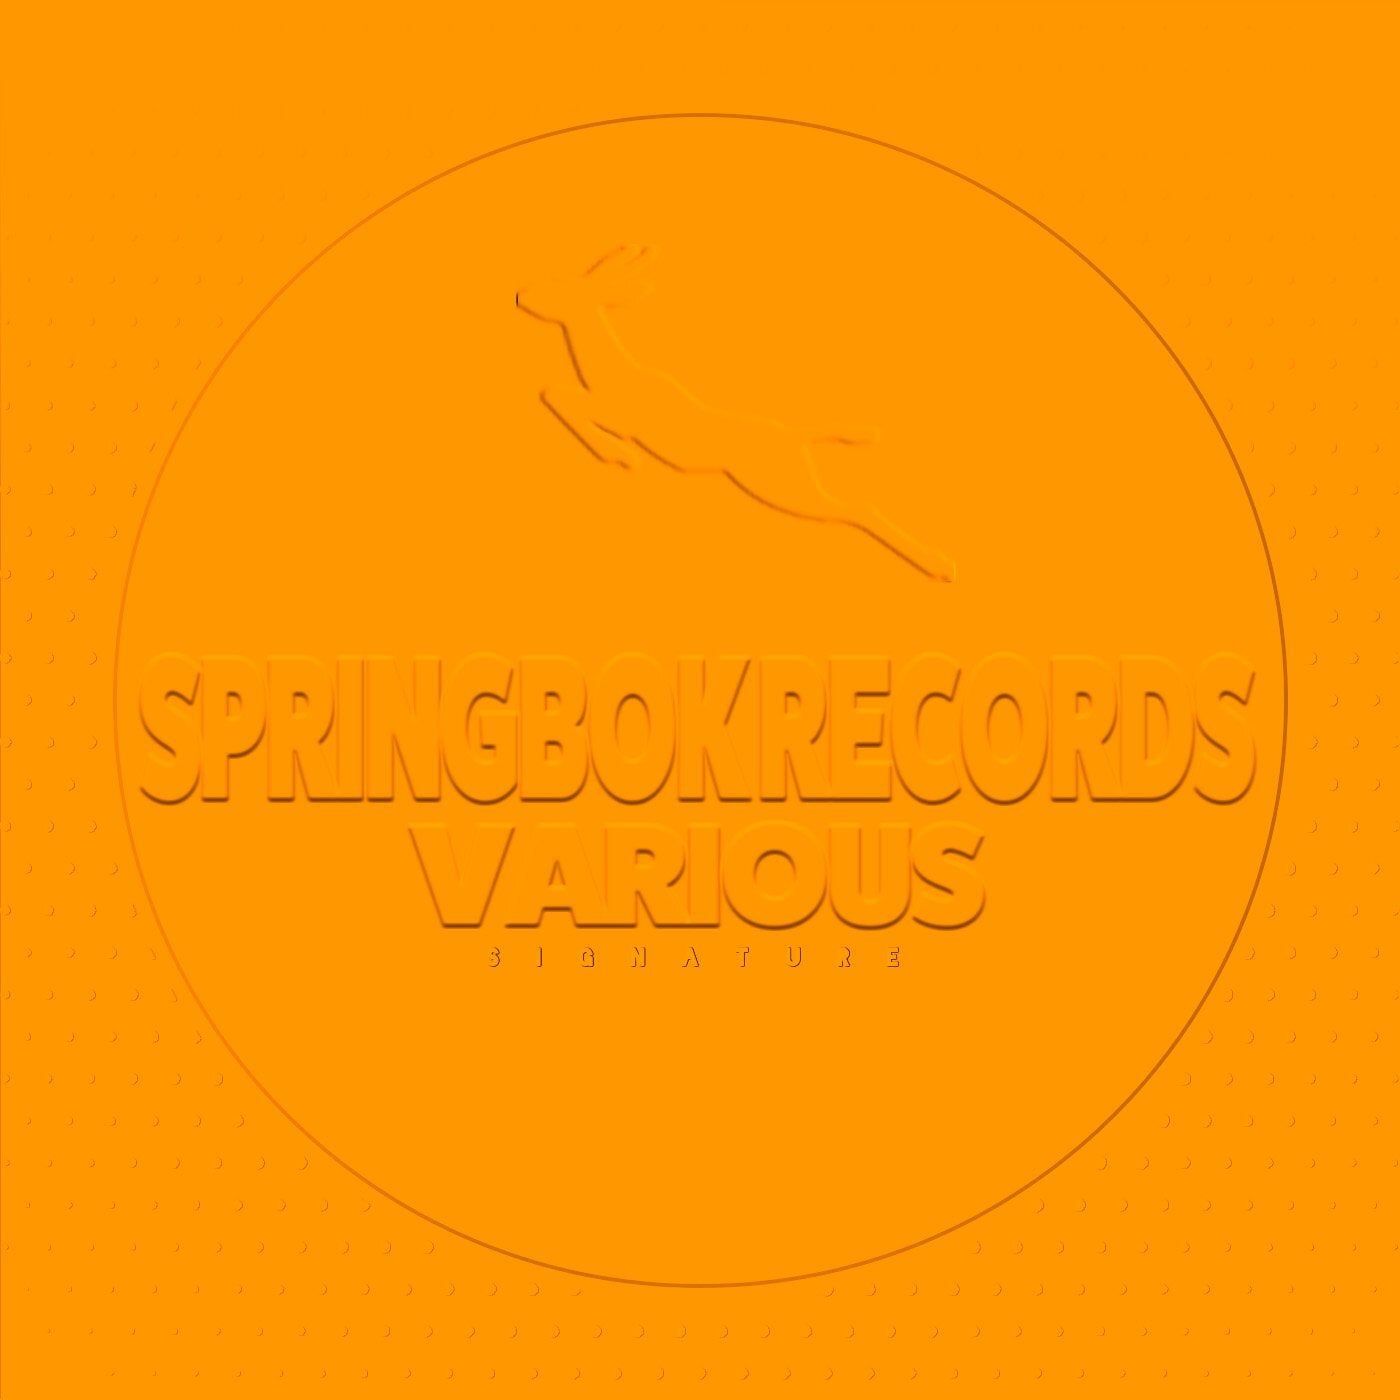 Spirngbok Records Various Signature